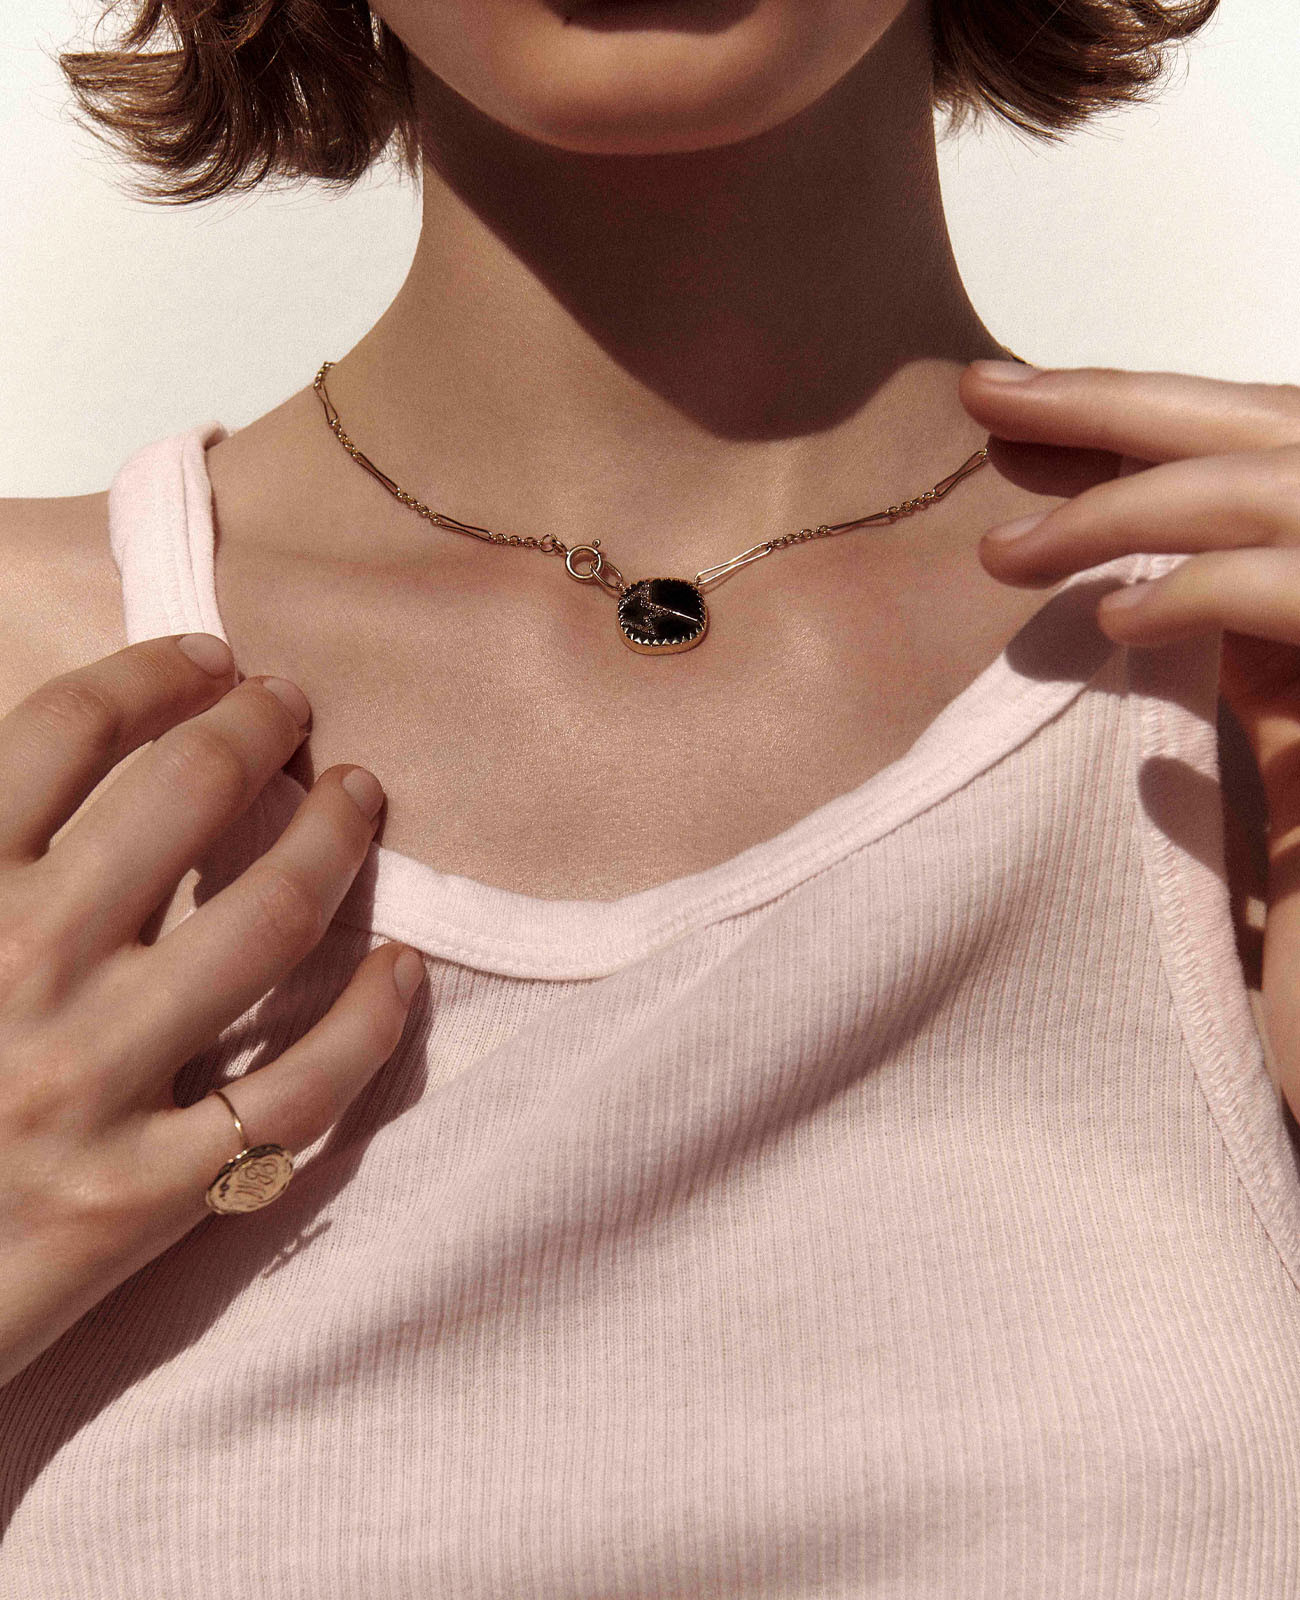 VARDA N°2 BLACK DIAMOND necklace pascale monvoisin jewelry paris